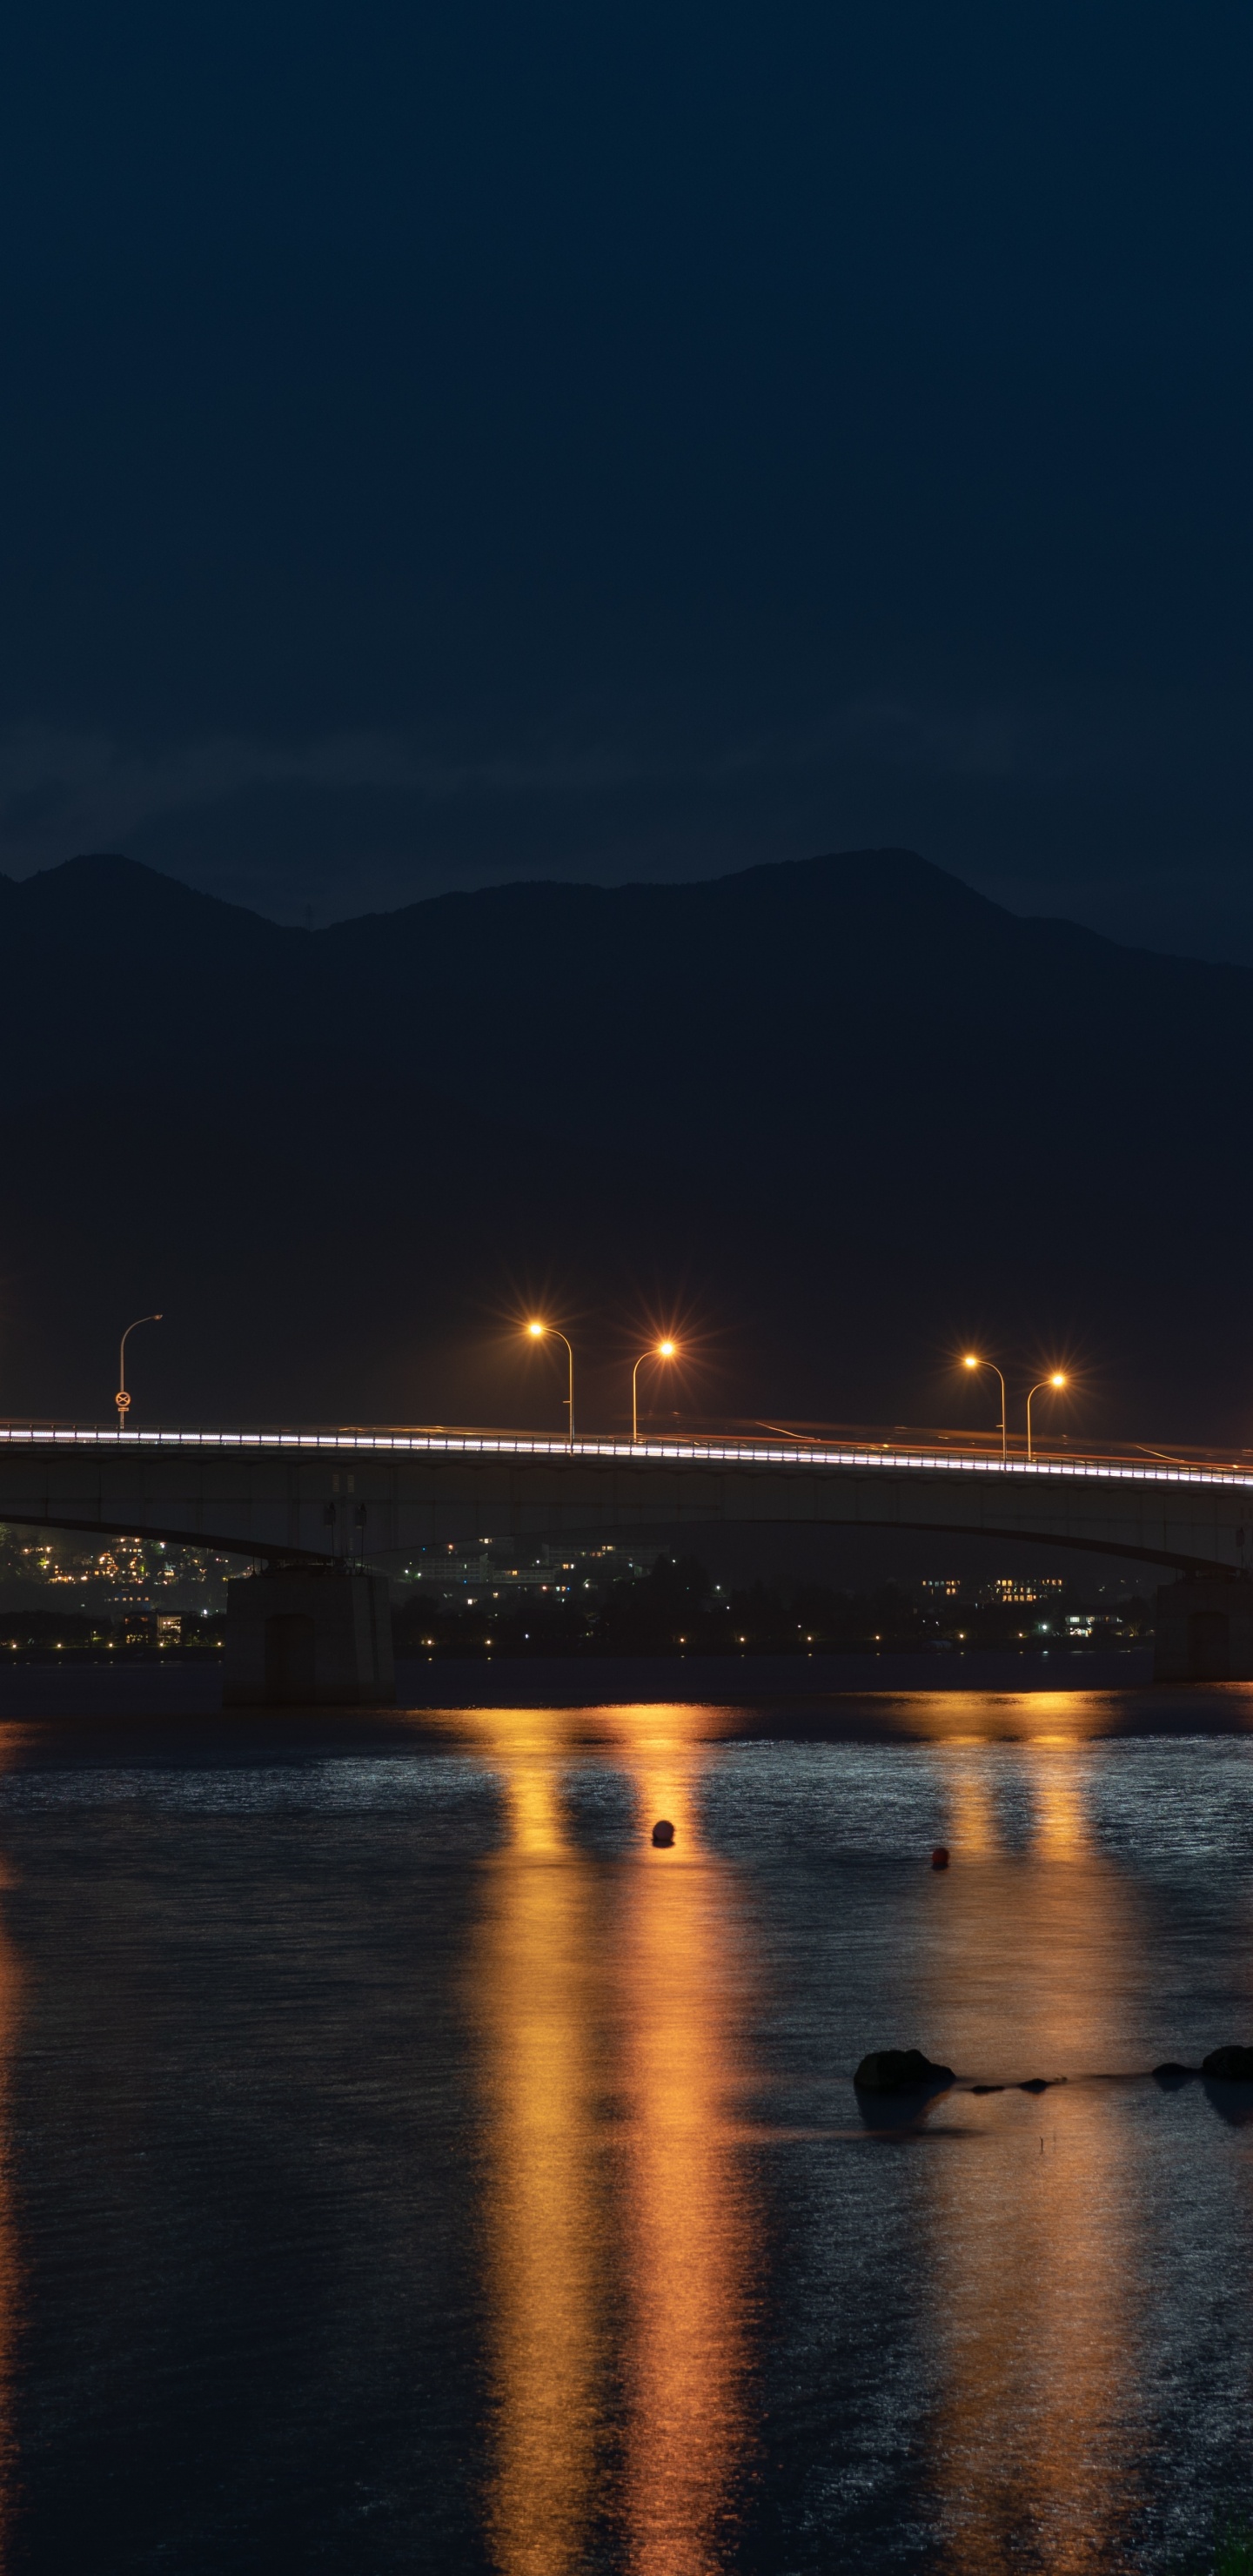 Beleuchtete Brücke Über Wasser Während Der Nacht Night. Wallpaper in 1440x2960 Resolution